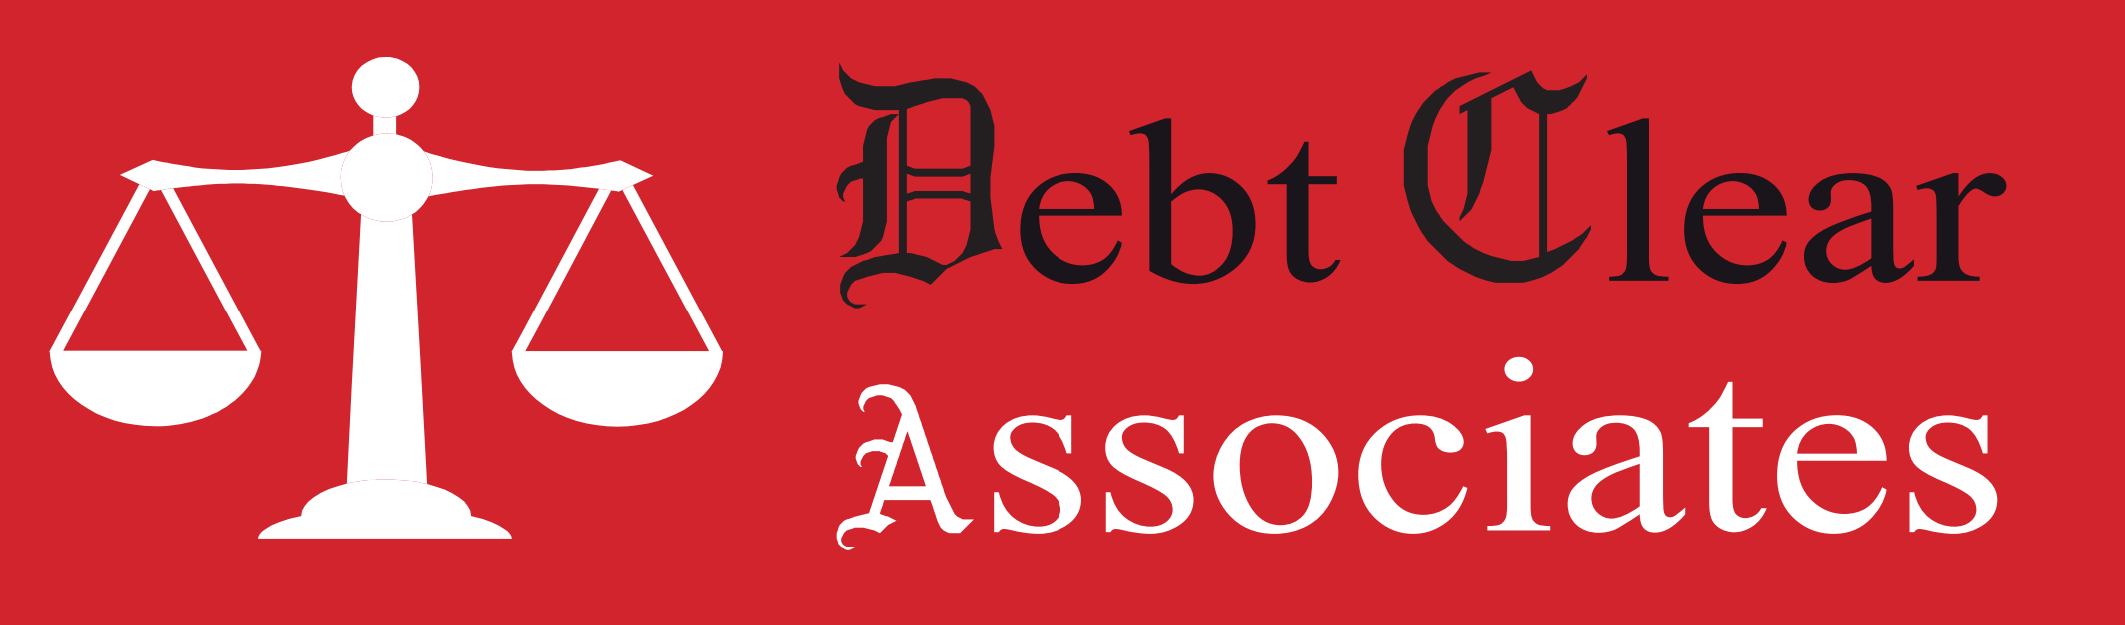 Debt Clear Associates